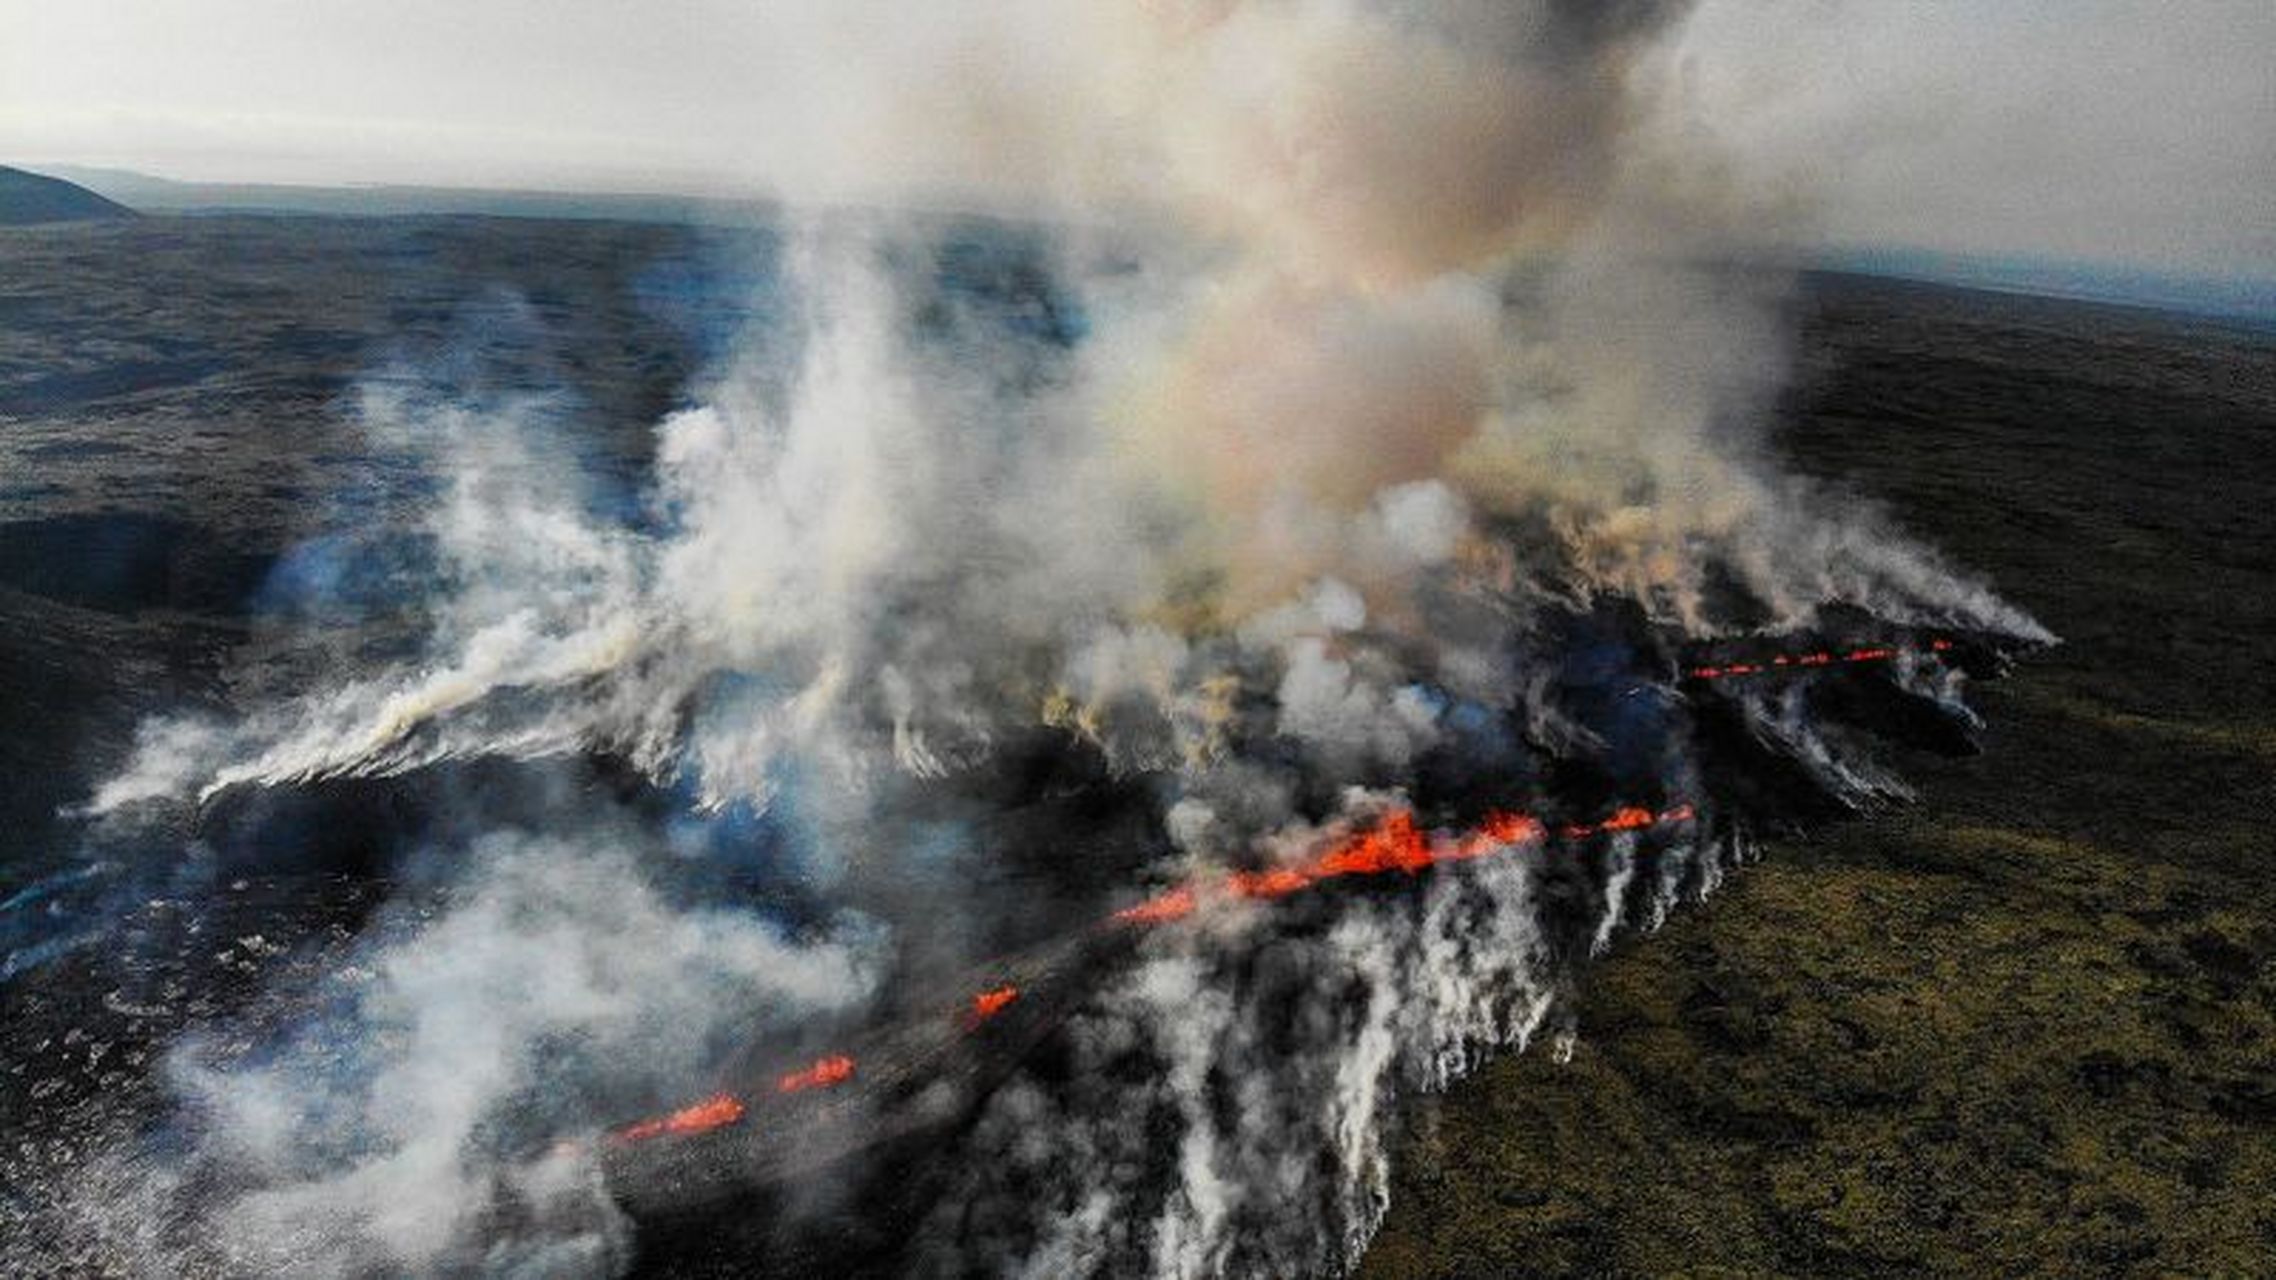 外媒头条:冰岛在发生数周地震后火山爆发